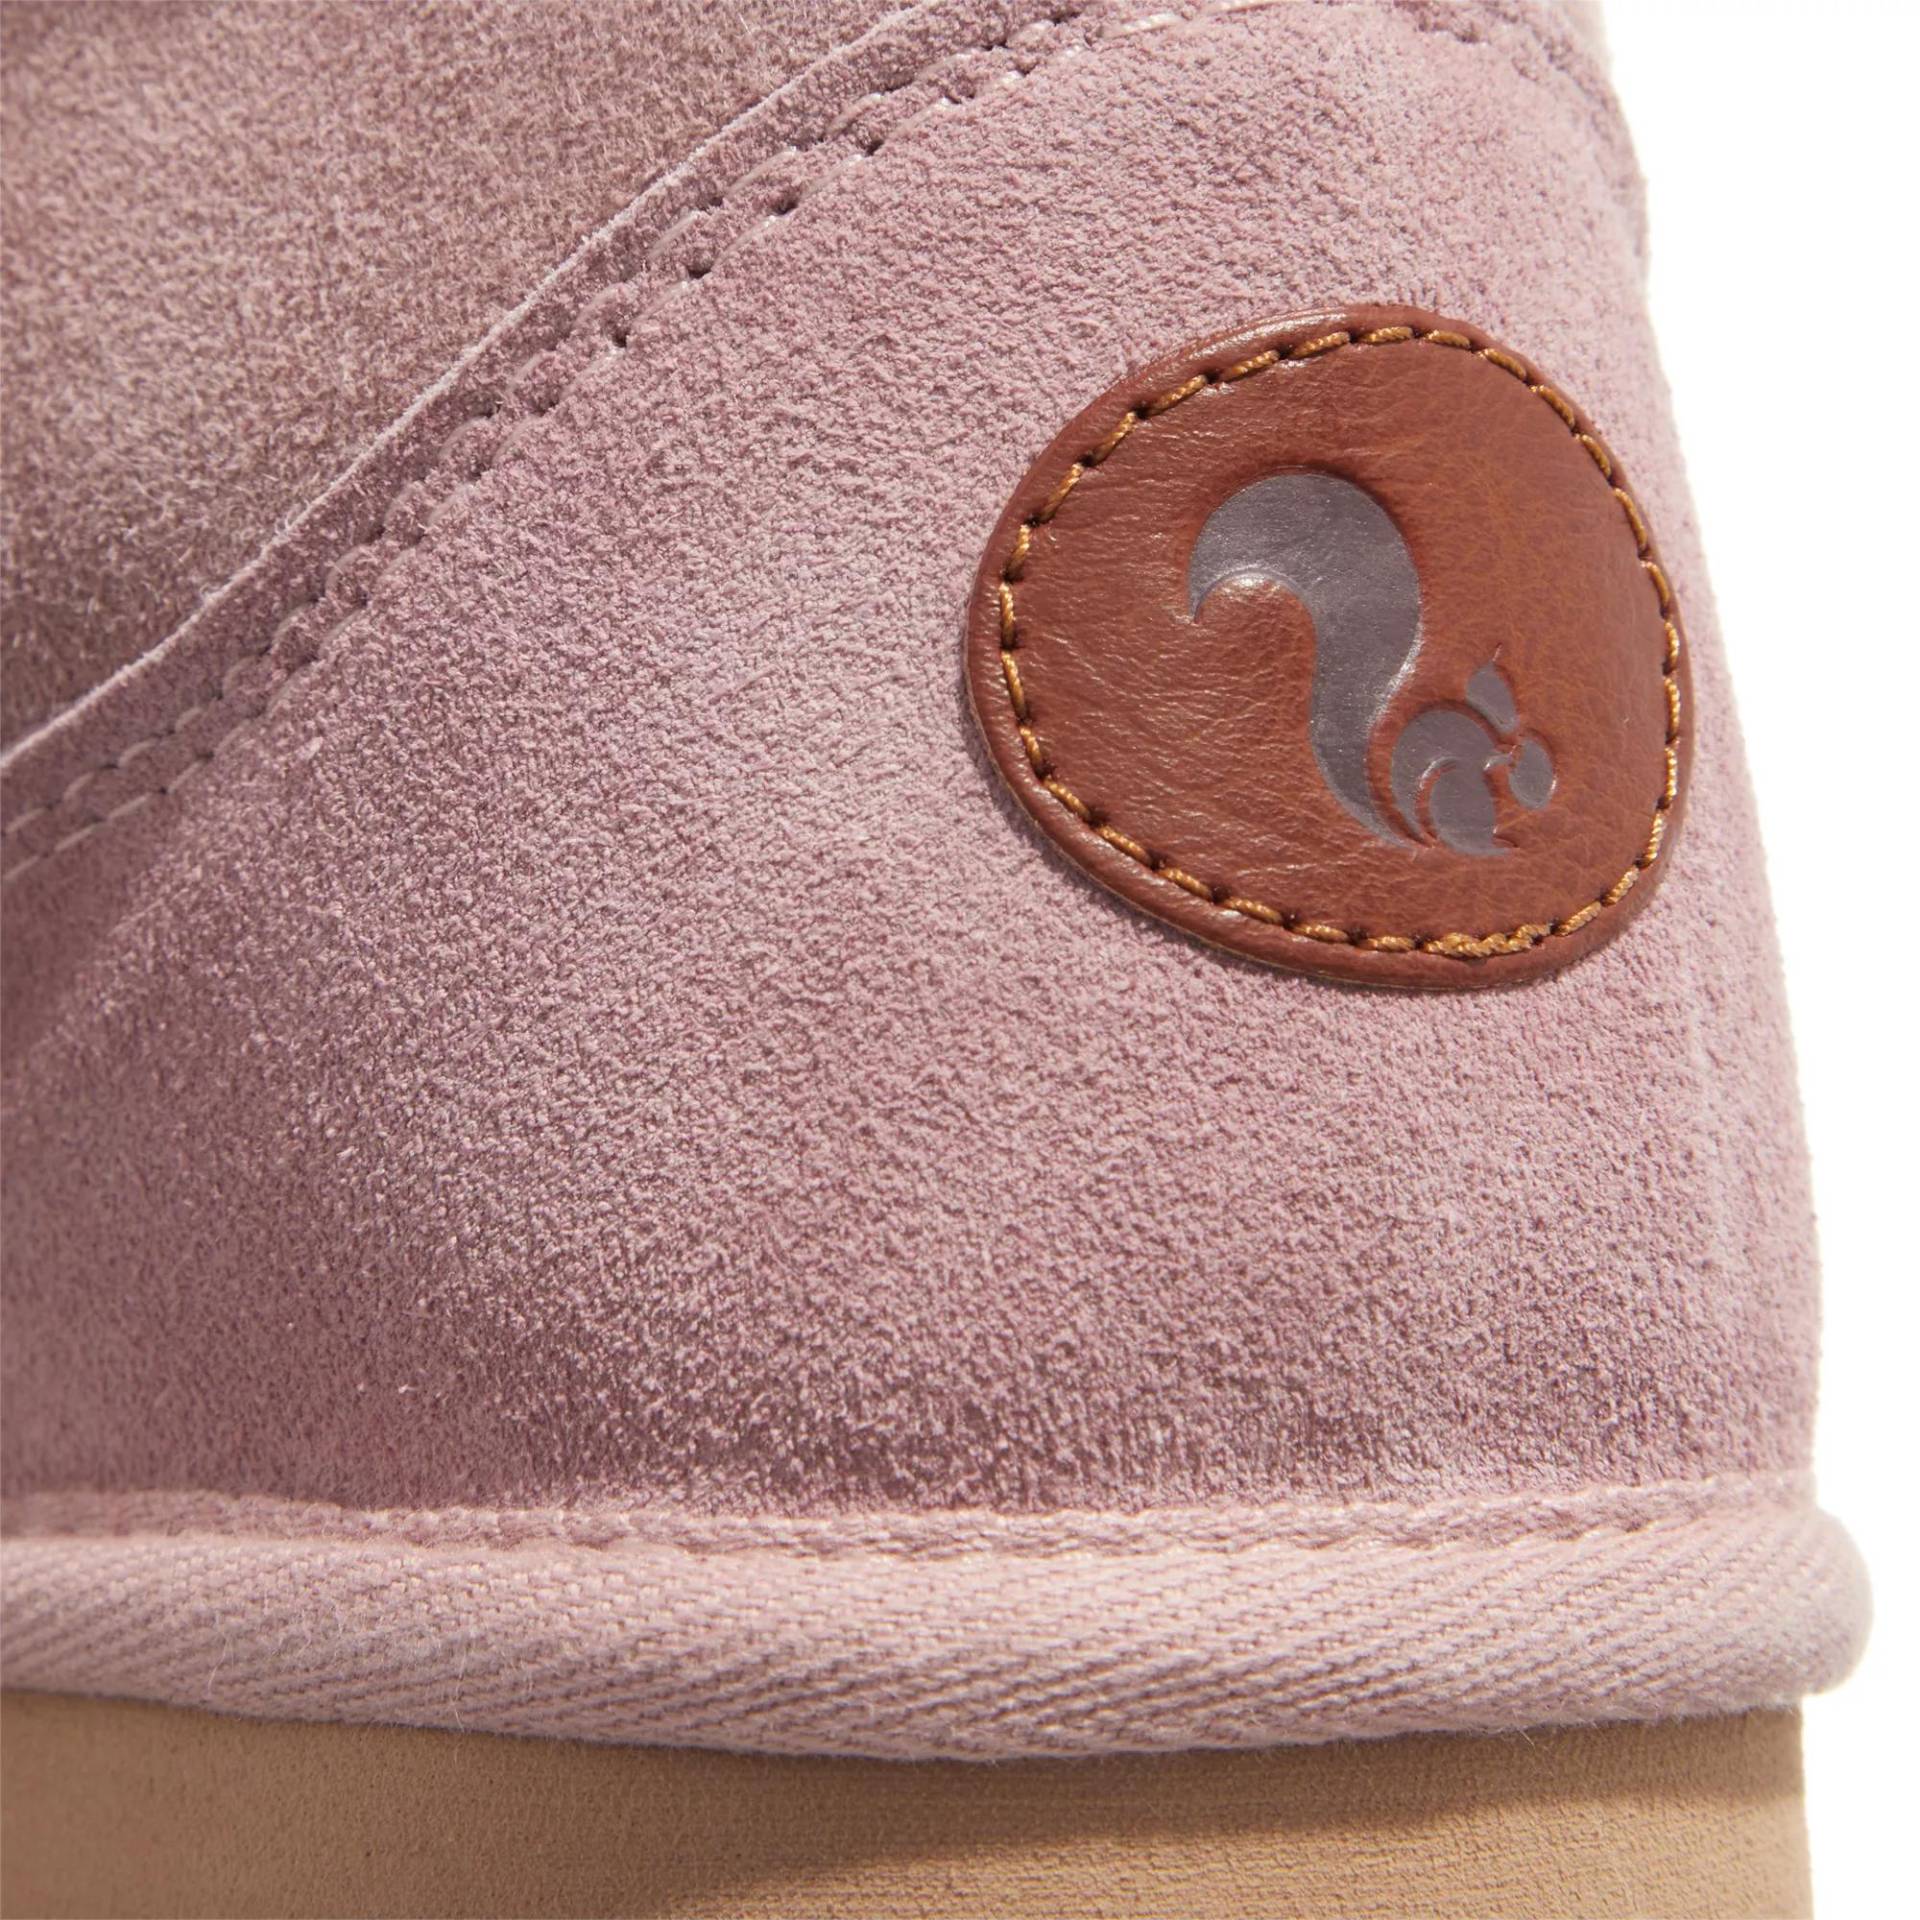 thies Sneakers - thies 1856 ® Mega Shorty new pink (W) - Gr. 39 (EU) - in Gold - für Damen von thies